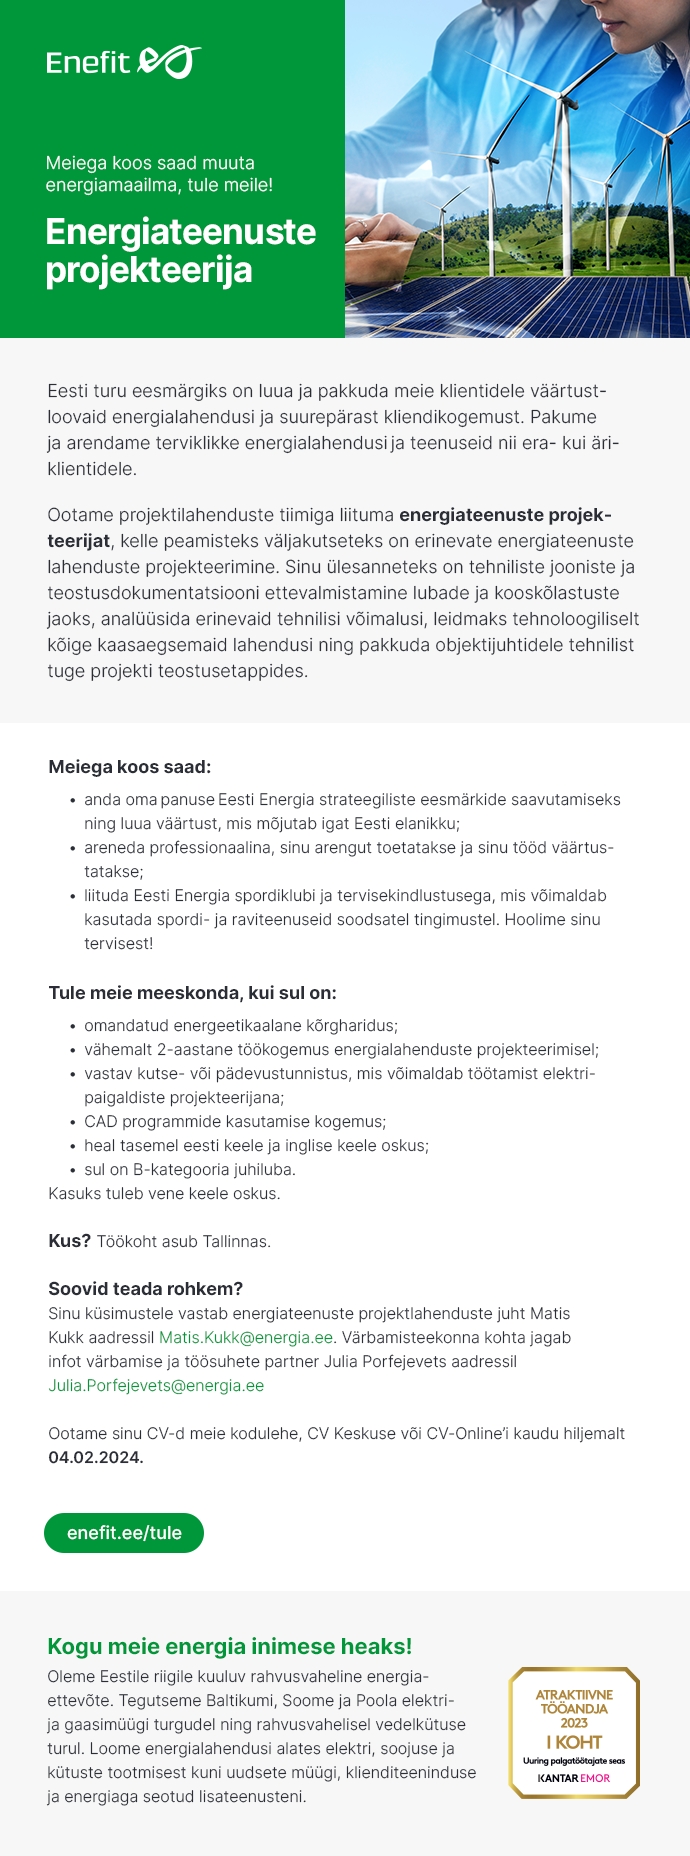 Eesti Energia Energiateenuste projekteerija